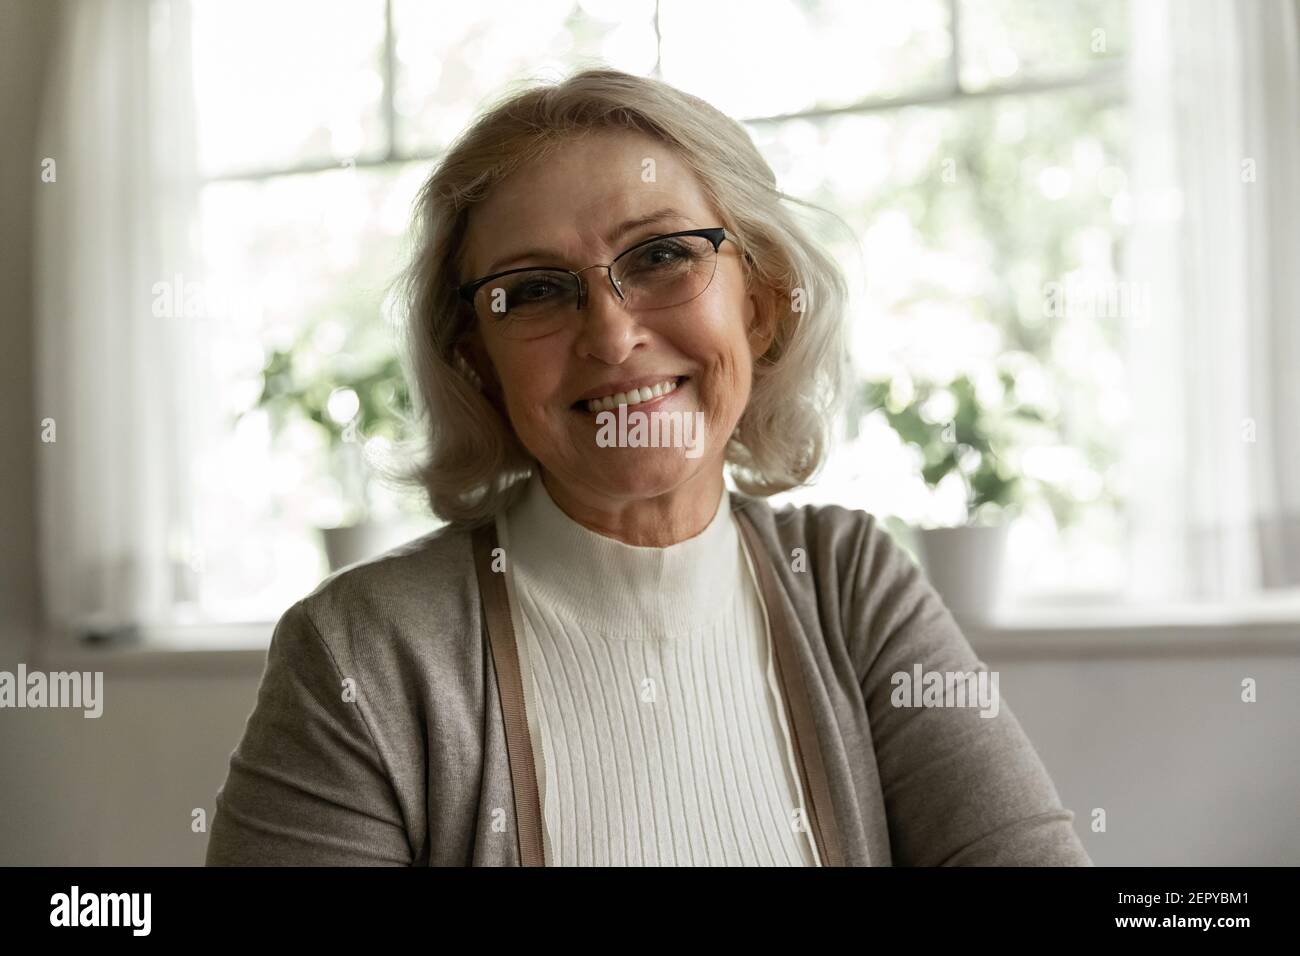 Photo portrait of happy elder OAP 60s woman wearing glasses Stock Photo